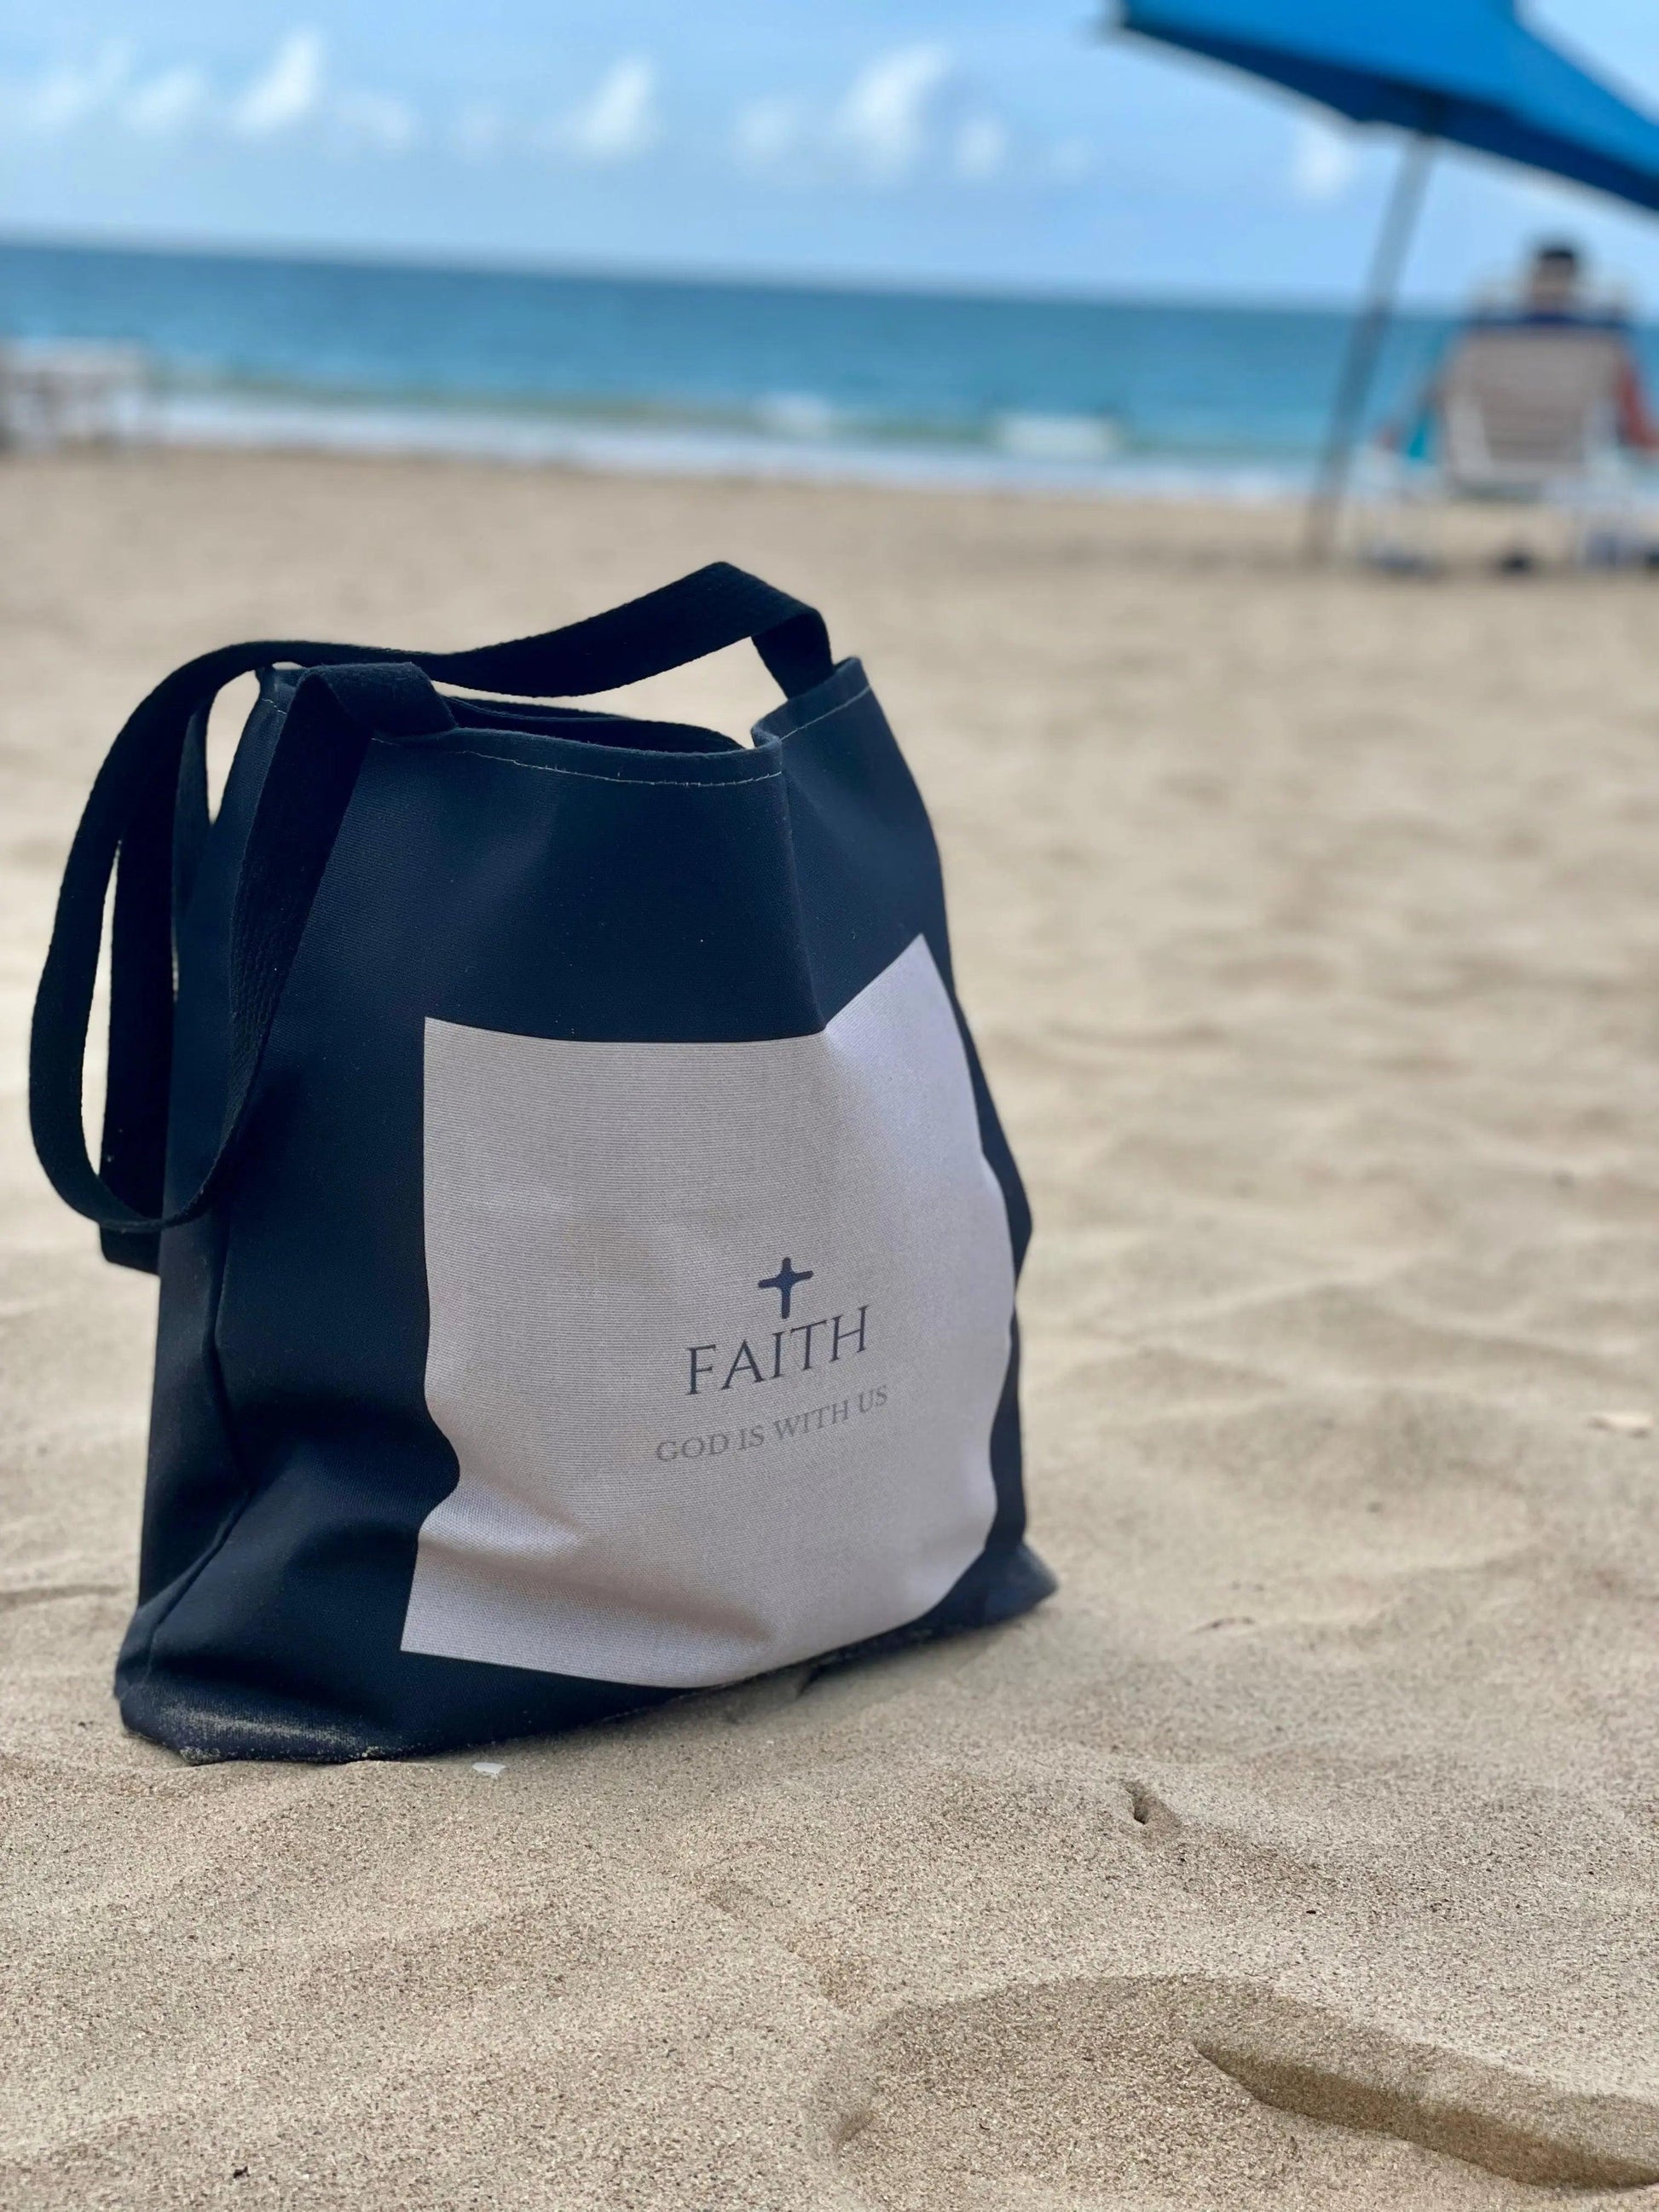 FAITH GOD IS WITH US Metallic black shopper tote bag - Faith God is with us